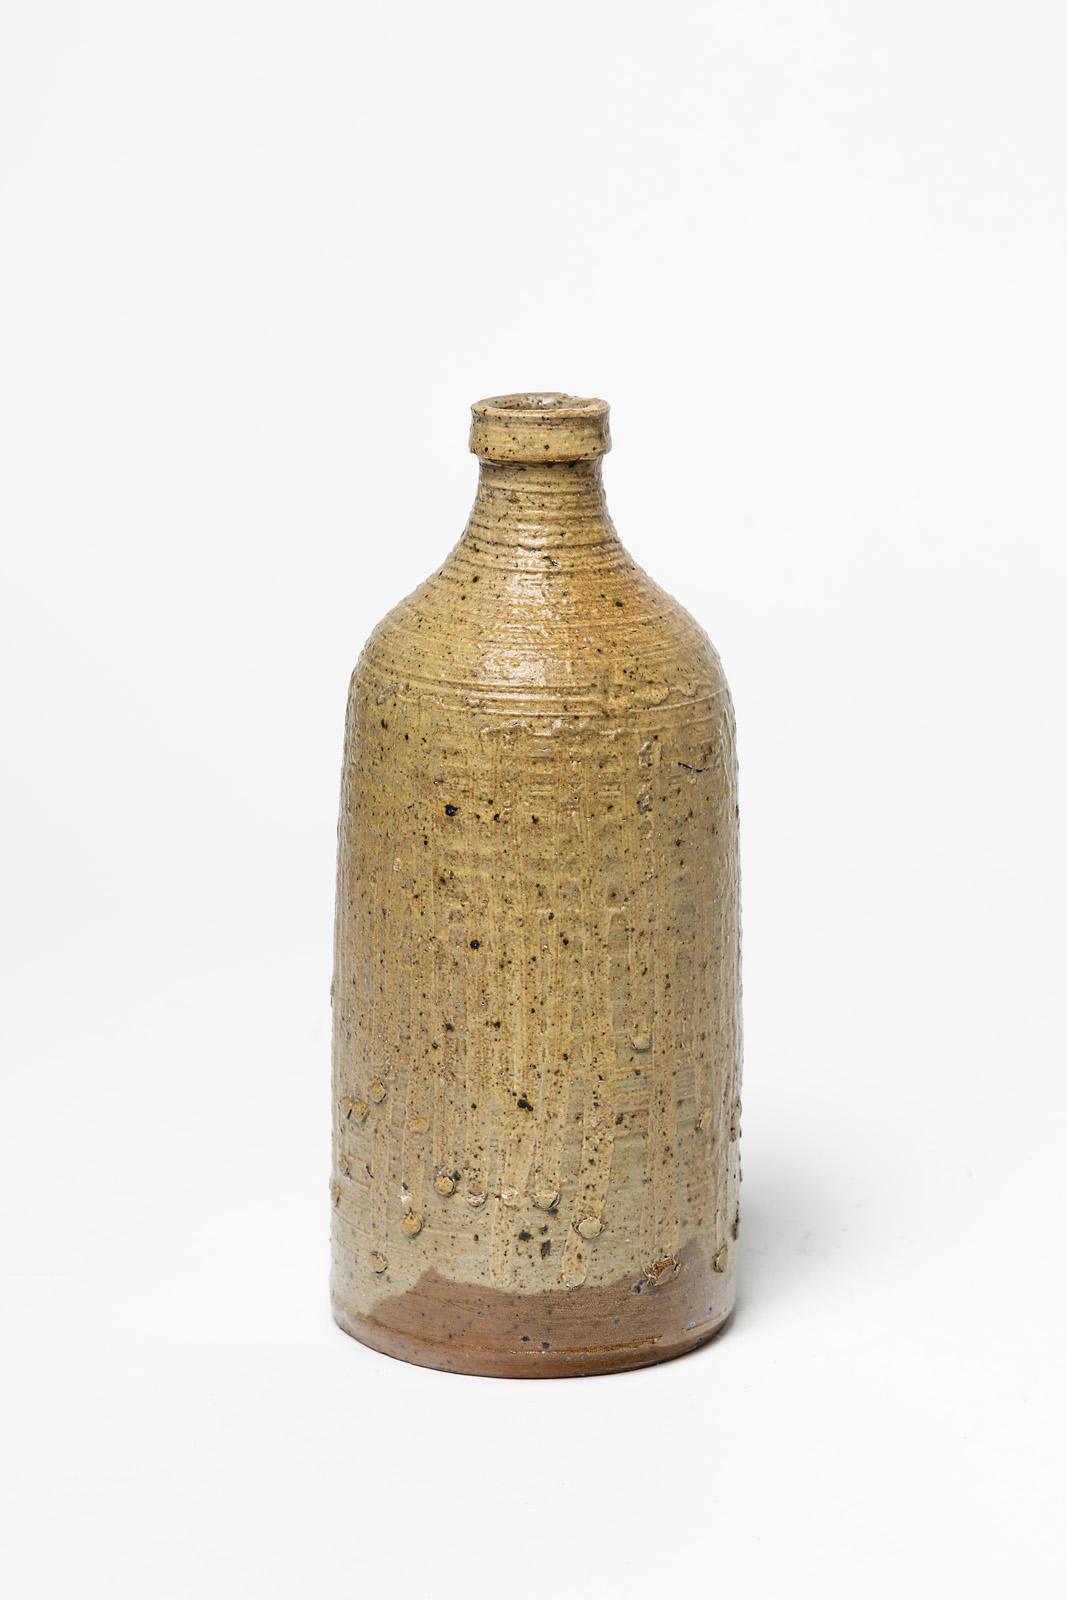 La Borne

Originelle und dekorative Keramikflasche oder -vase aus dem 20

Signiert unter dem Sockel

Elegante braune Keramikglasurfarbe 

Original perfekter Zustand

Maße: Höhe: 23 cm, groß: 9 cm.